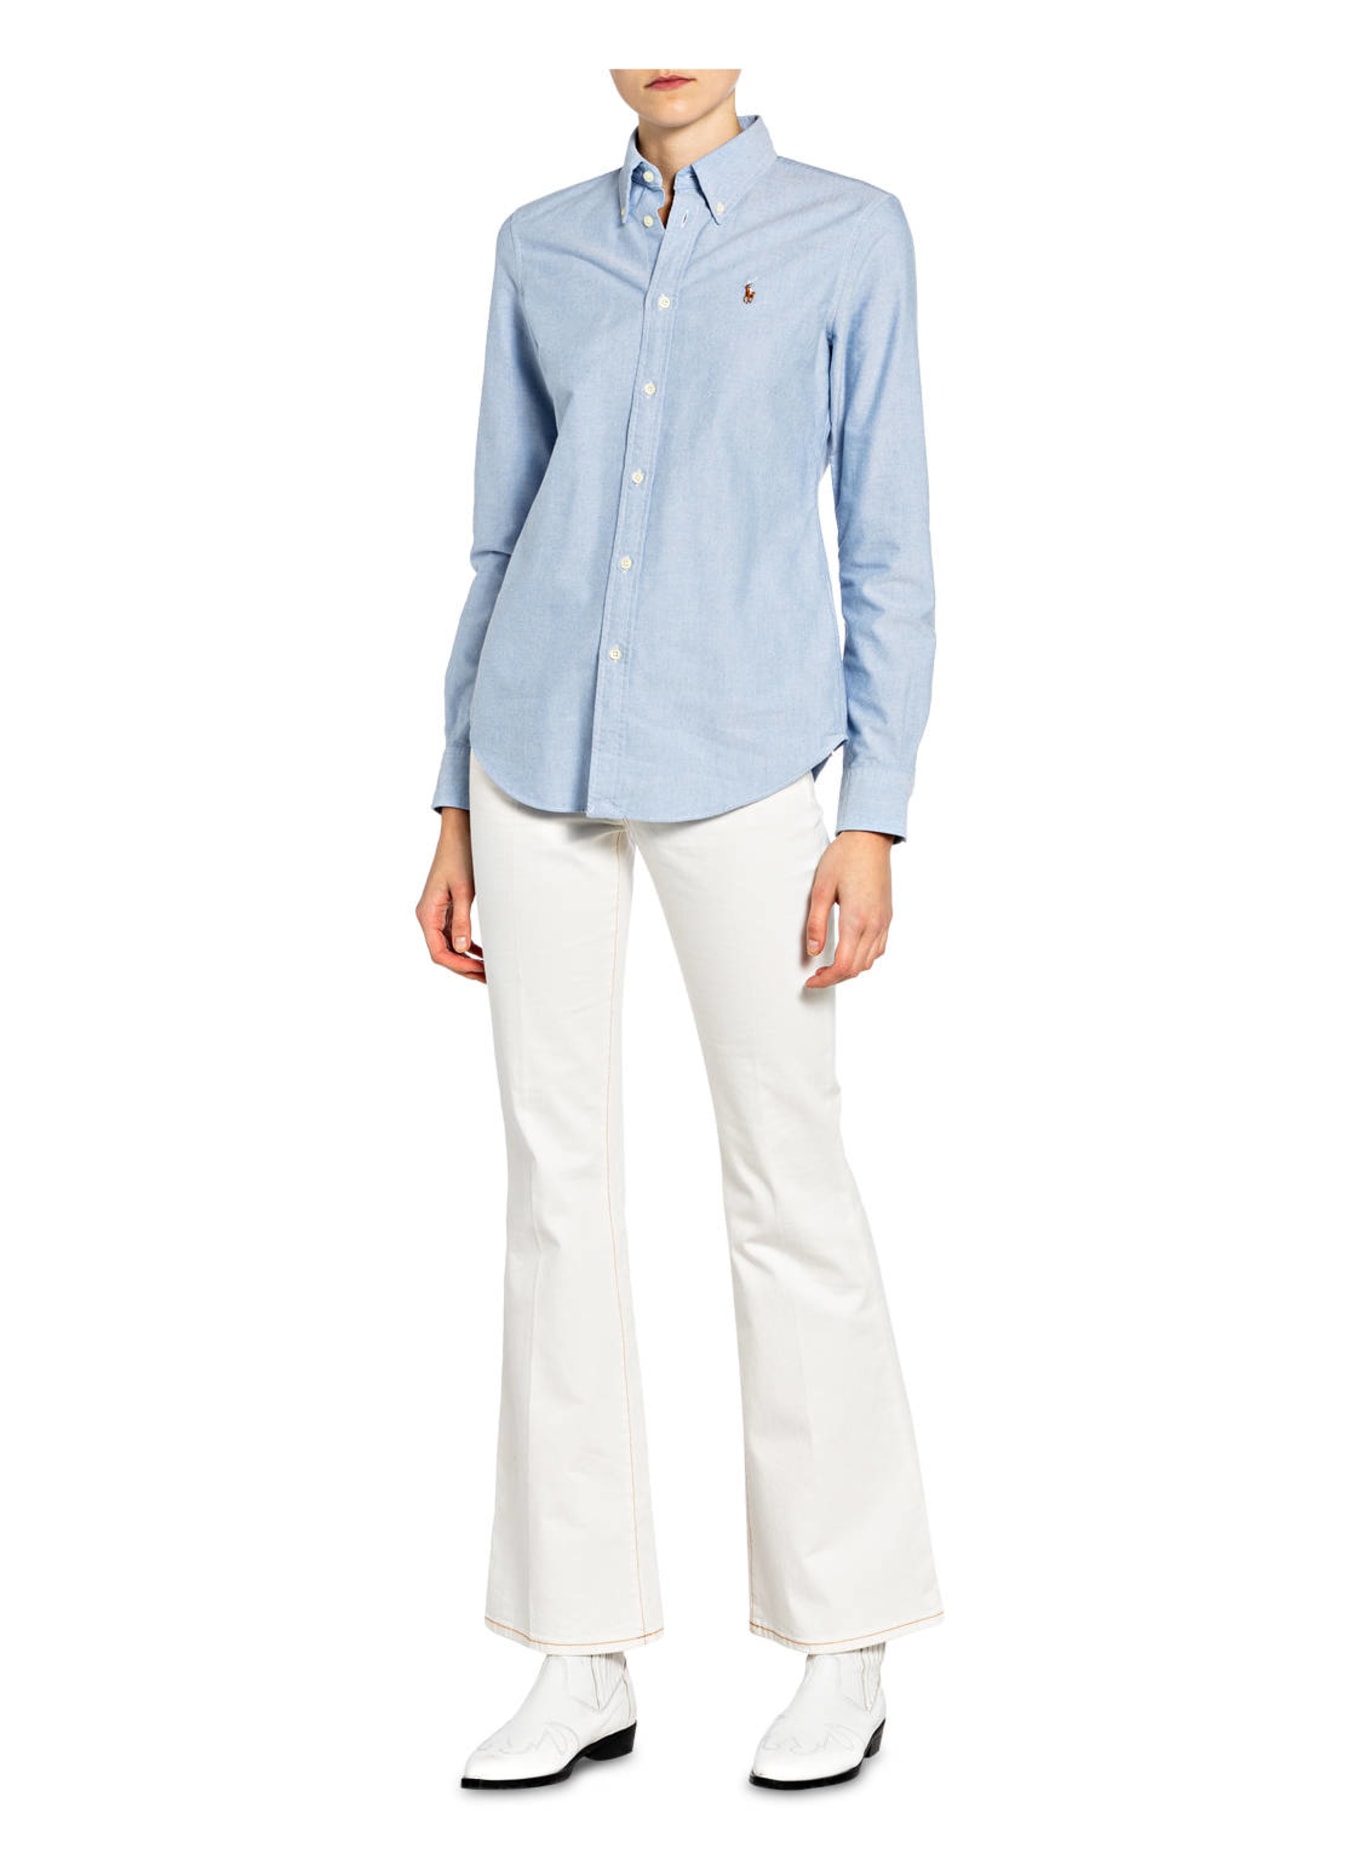 POLO RALPH LAUREN Shirt blouse, Color: LIGHT BLUE (Image 2)